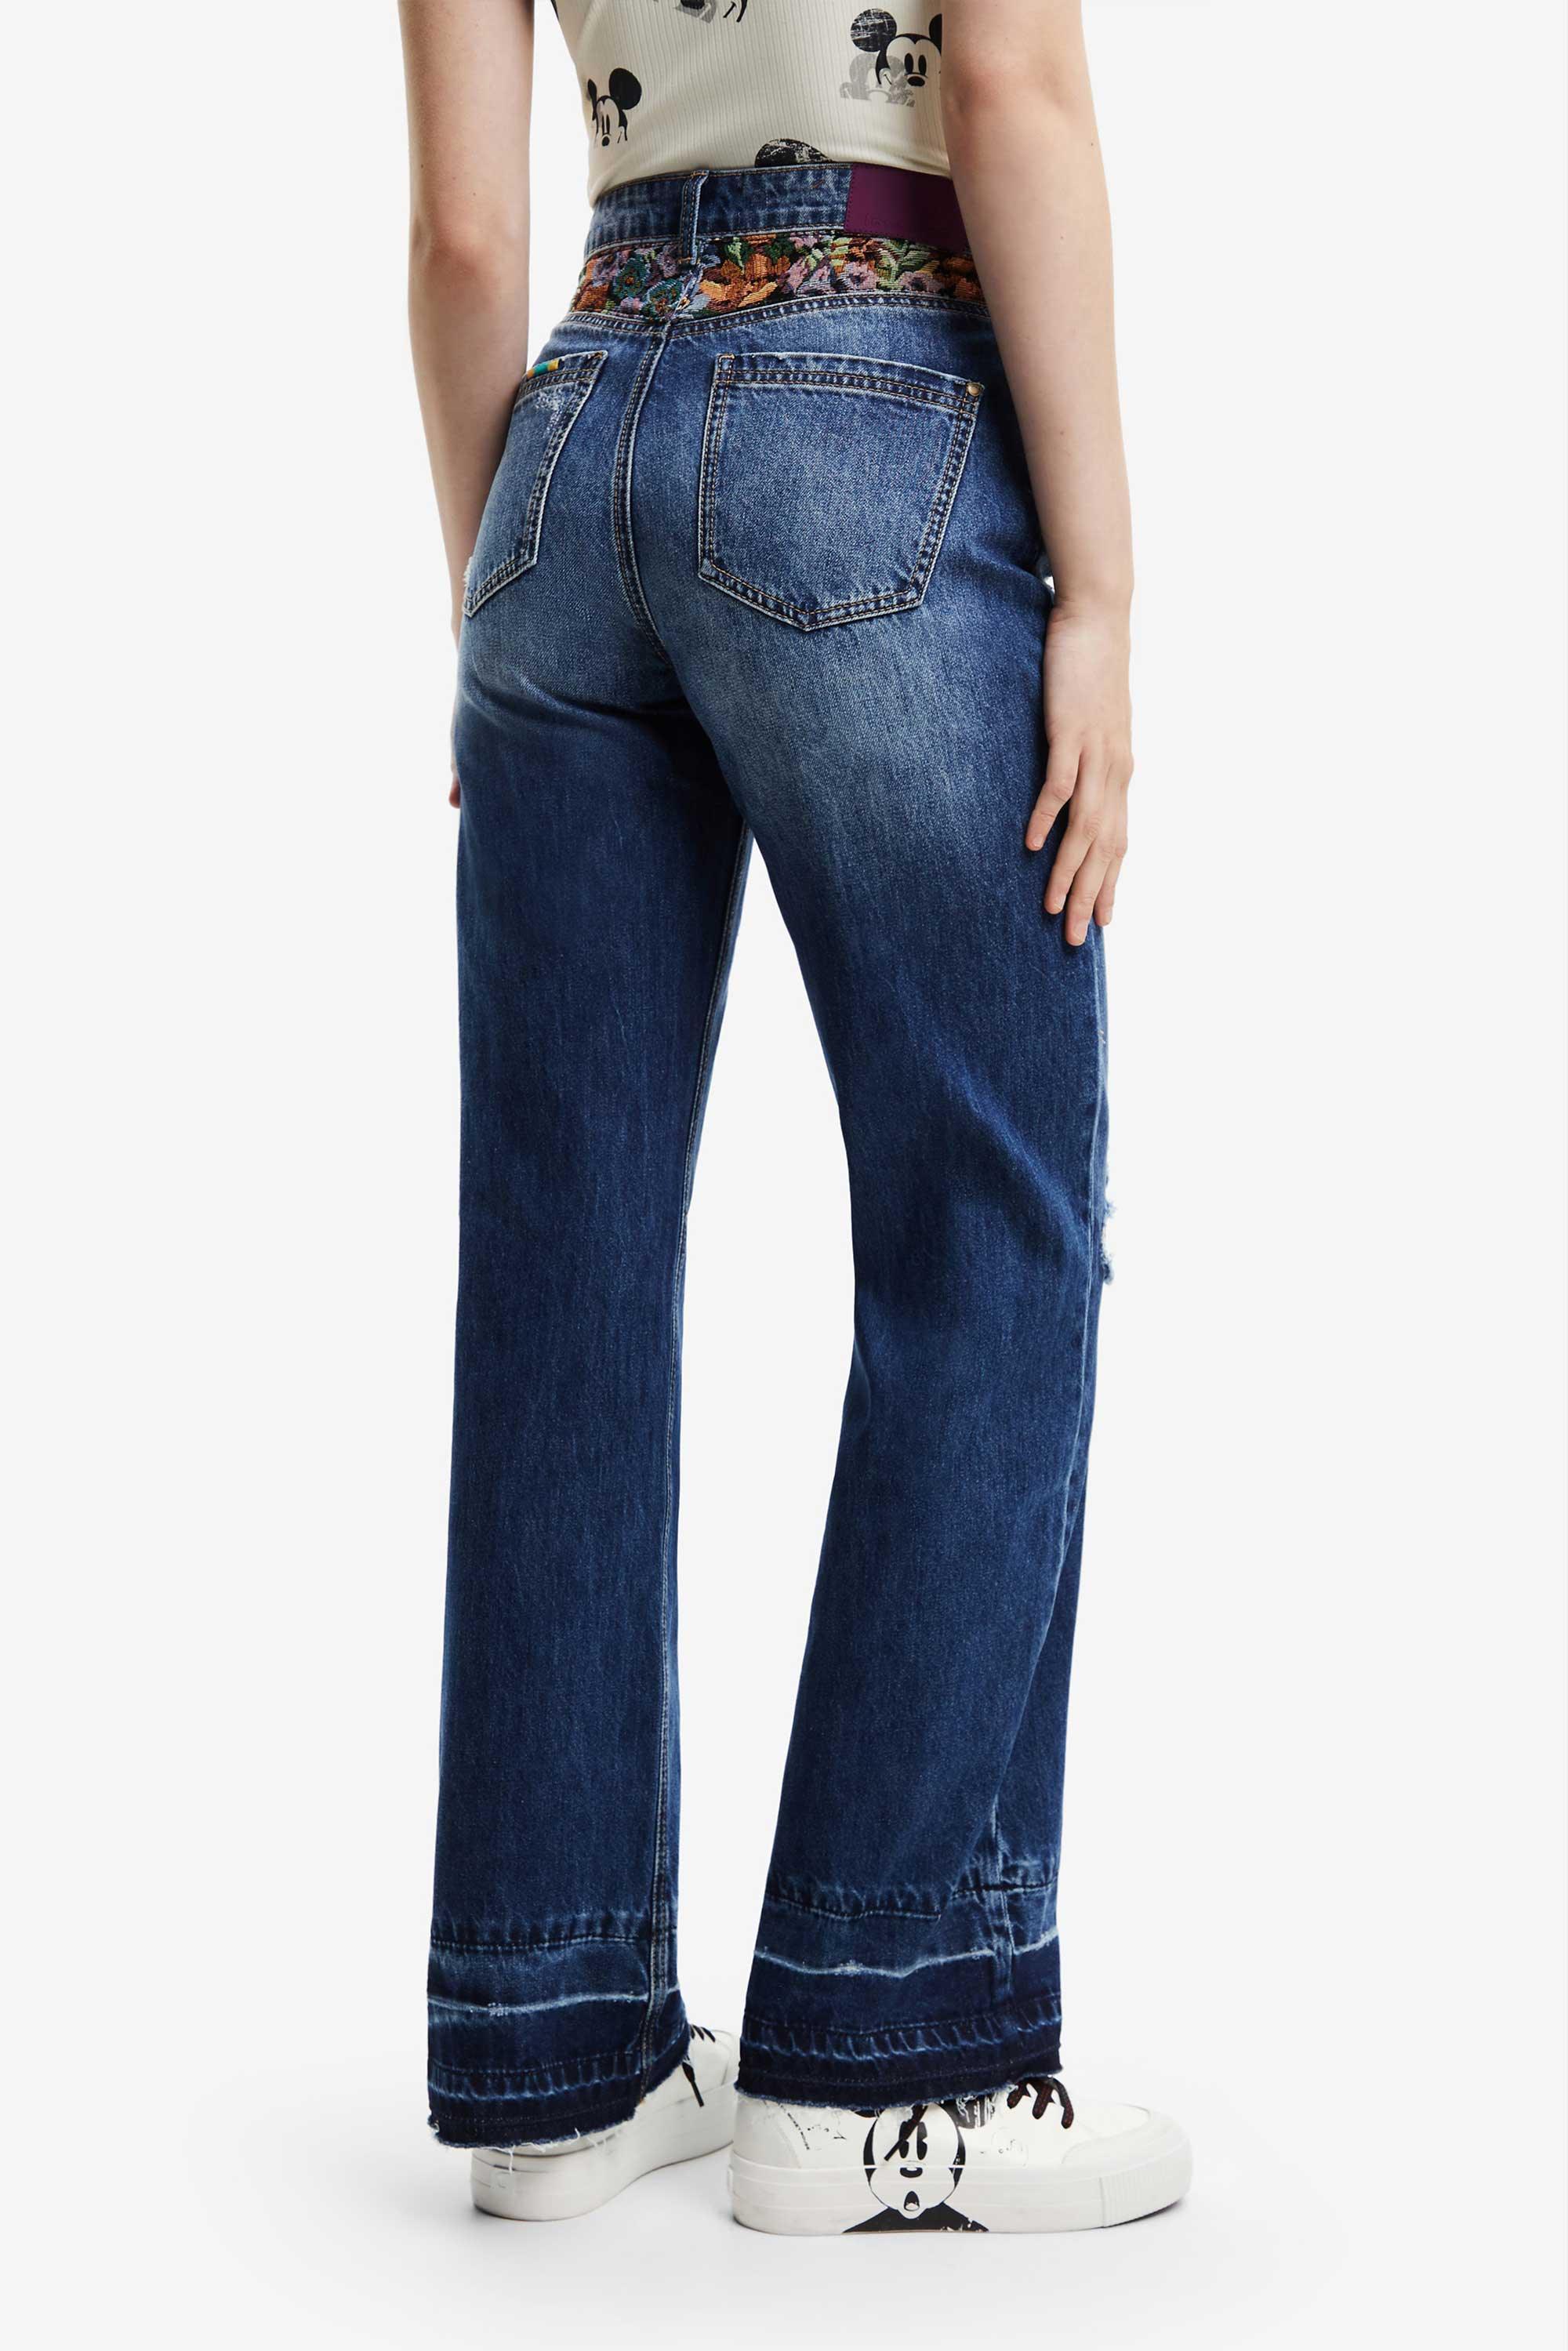 Jeans Vaqueros Wide leg Desigual - tiendadicons.com